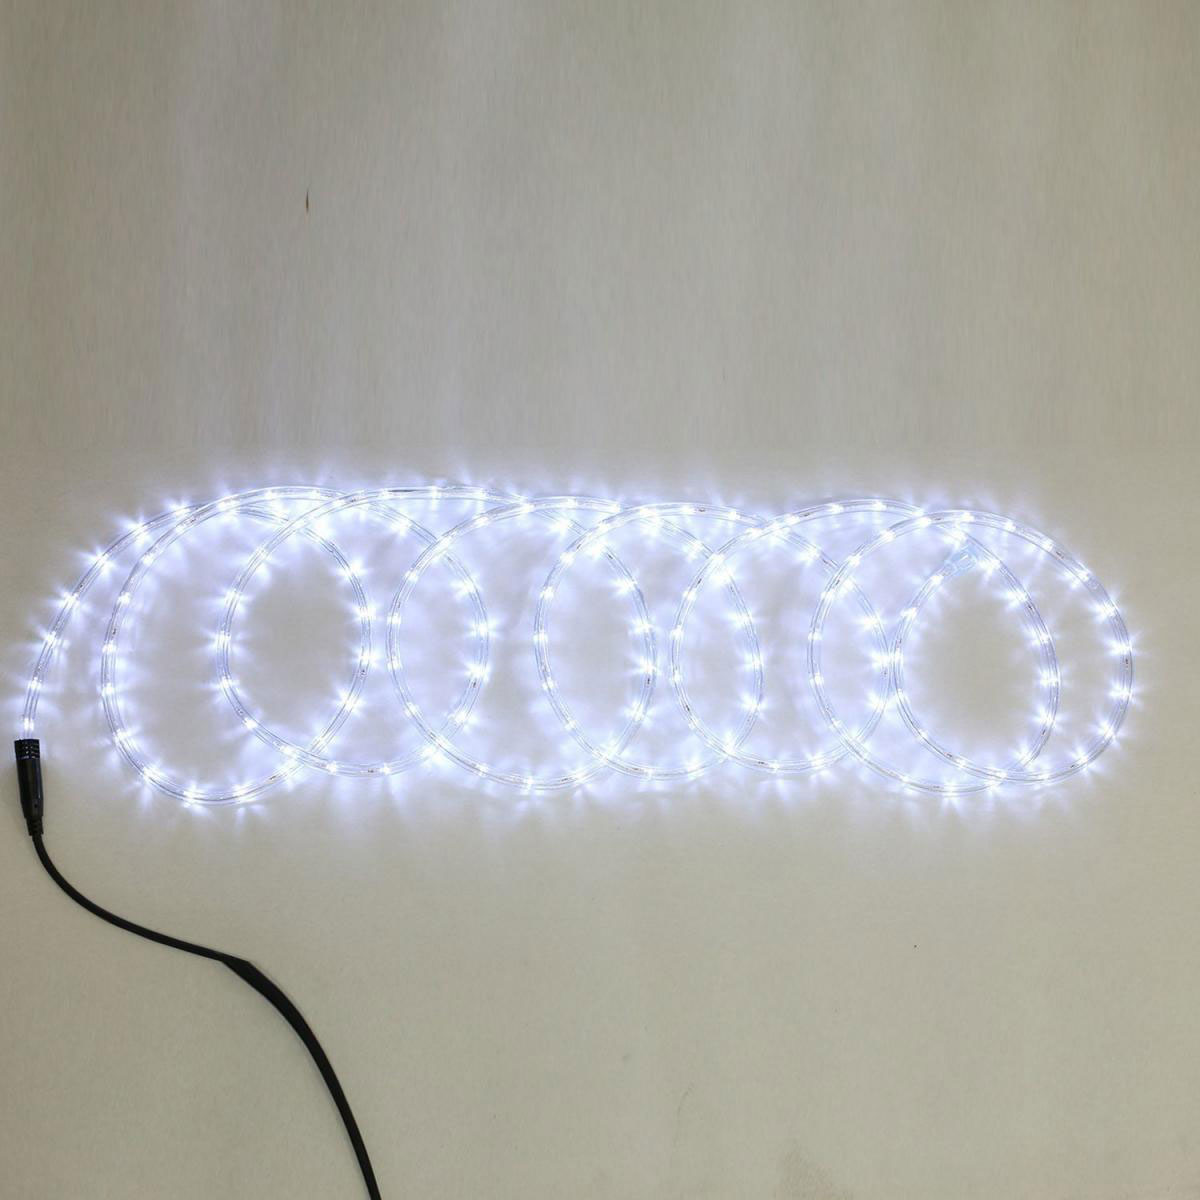 Flector LED-Lichtschlauch 9m kaltweiß, kaltweiß, 900